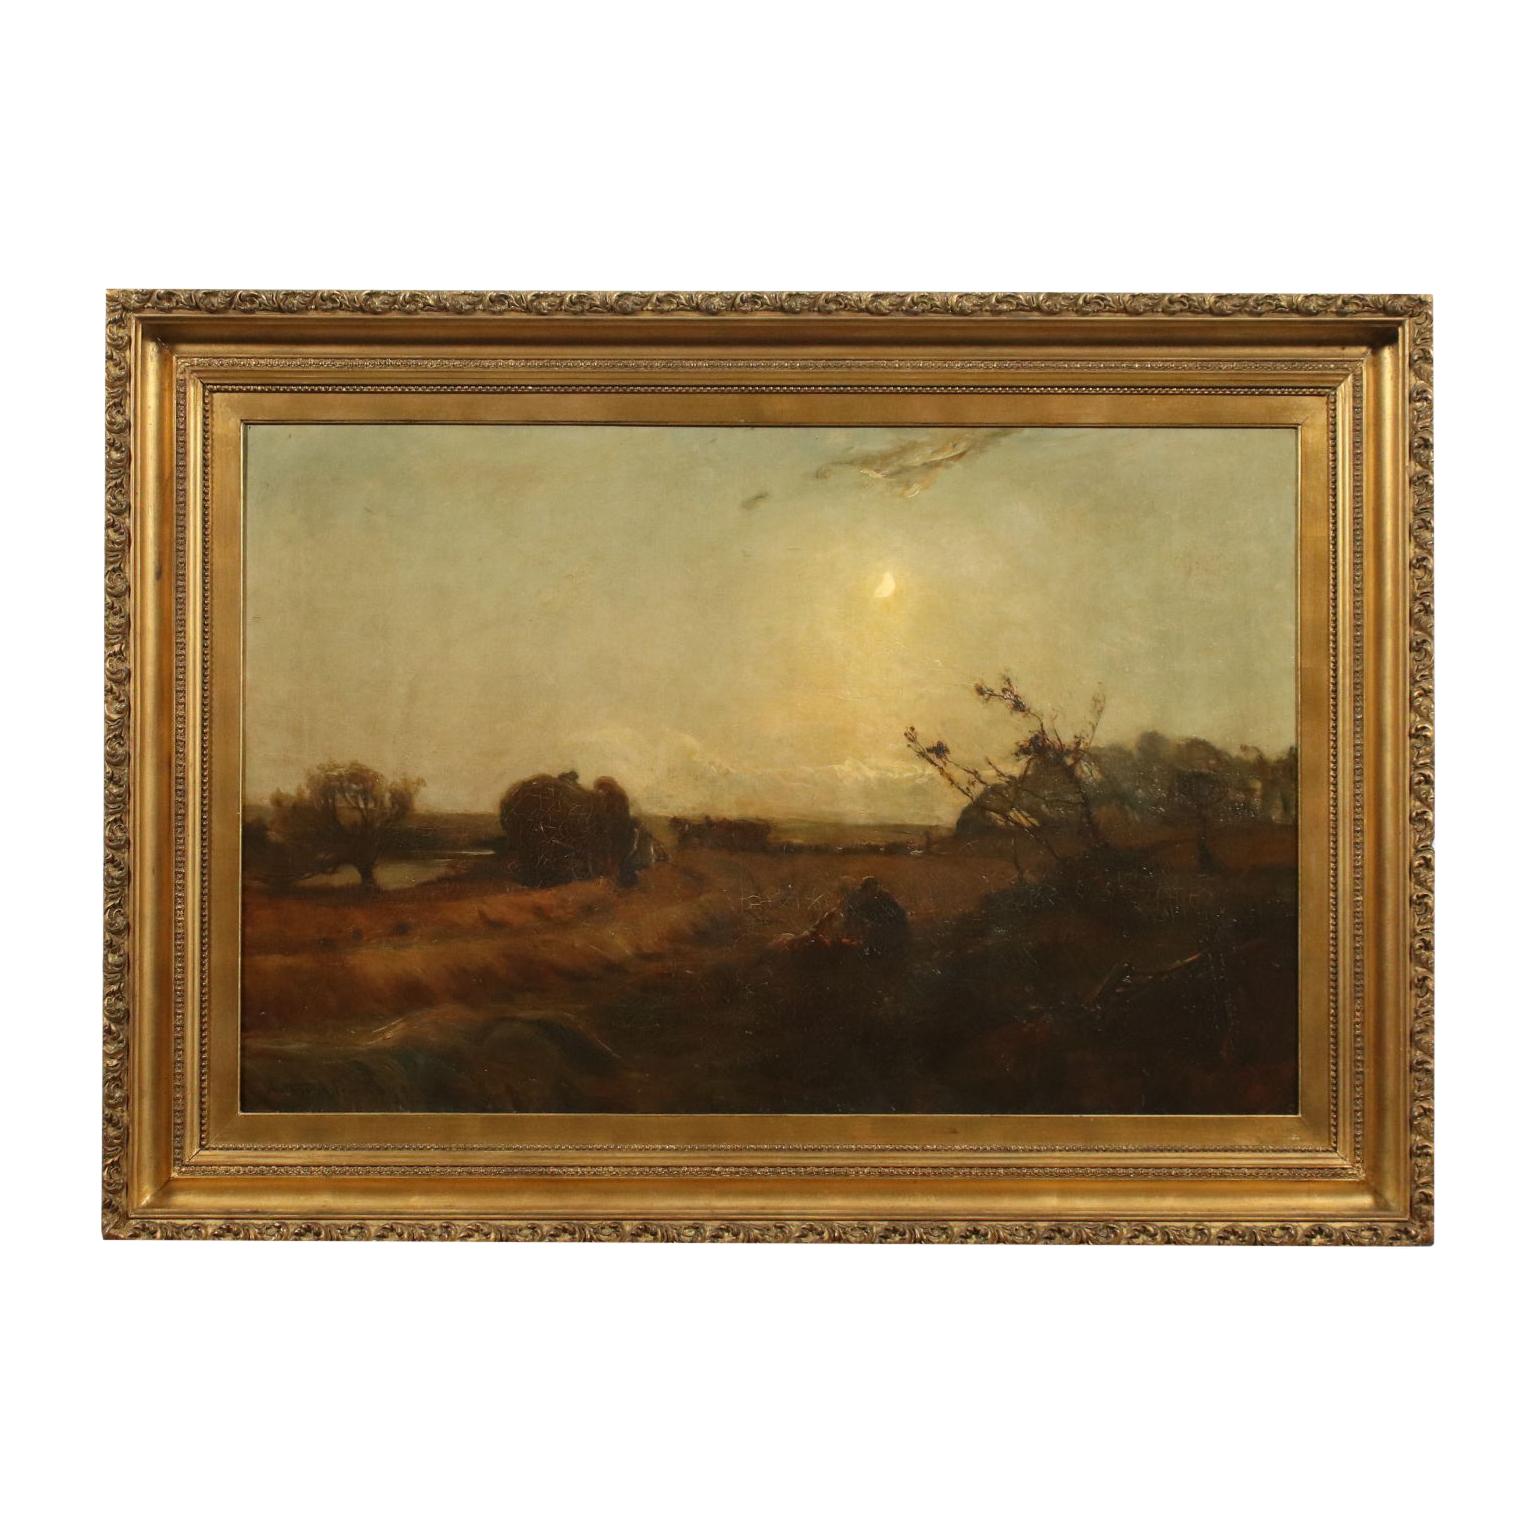 Unknown Landscape Painting - Arthur A. Friedenson Oil On Canvas, Rural Landscape 1893